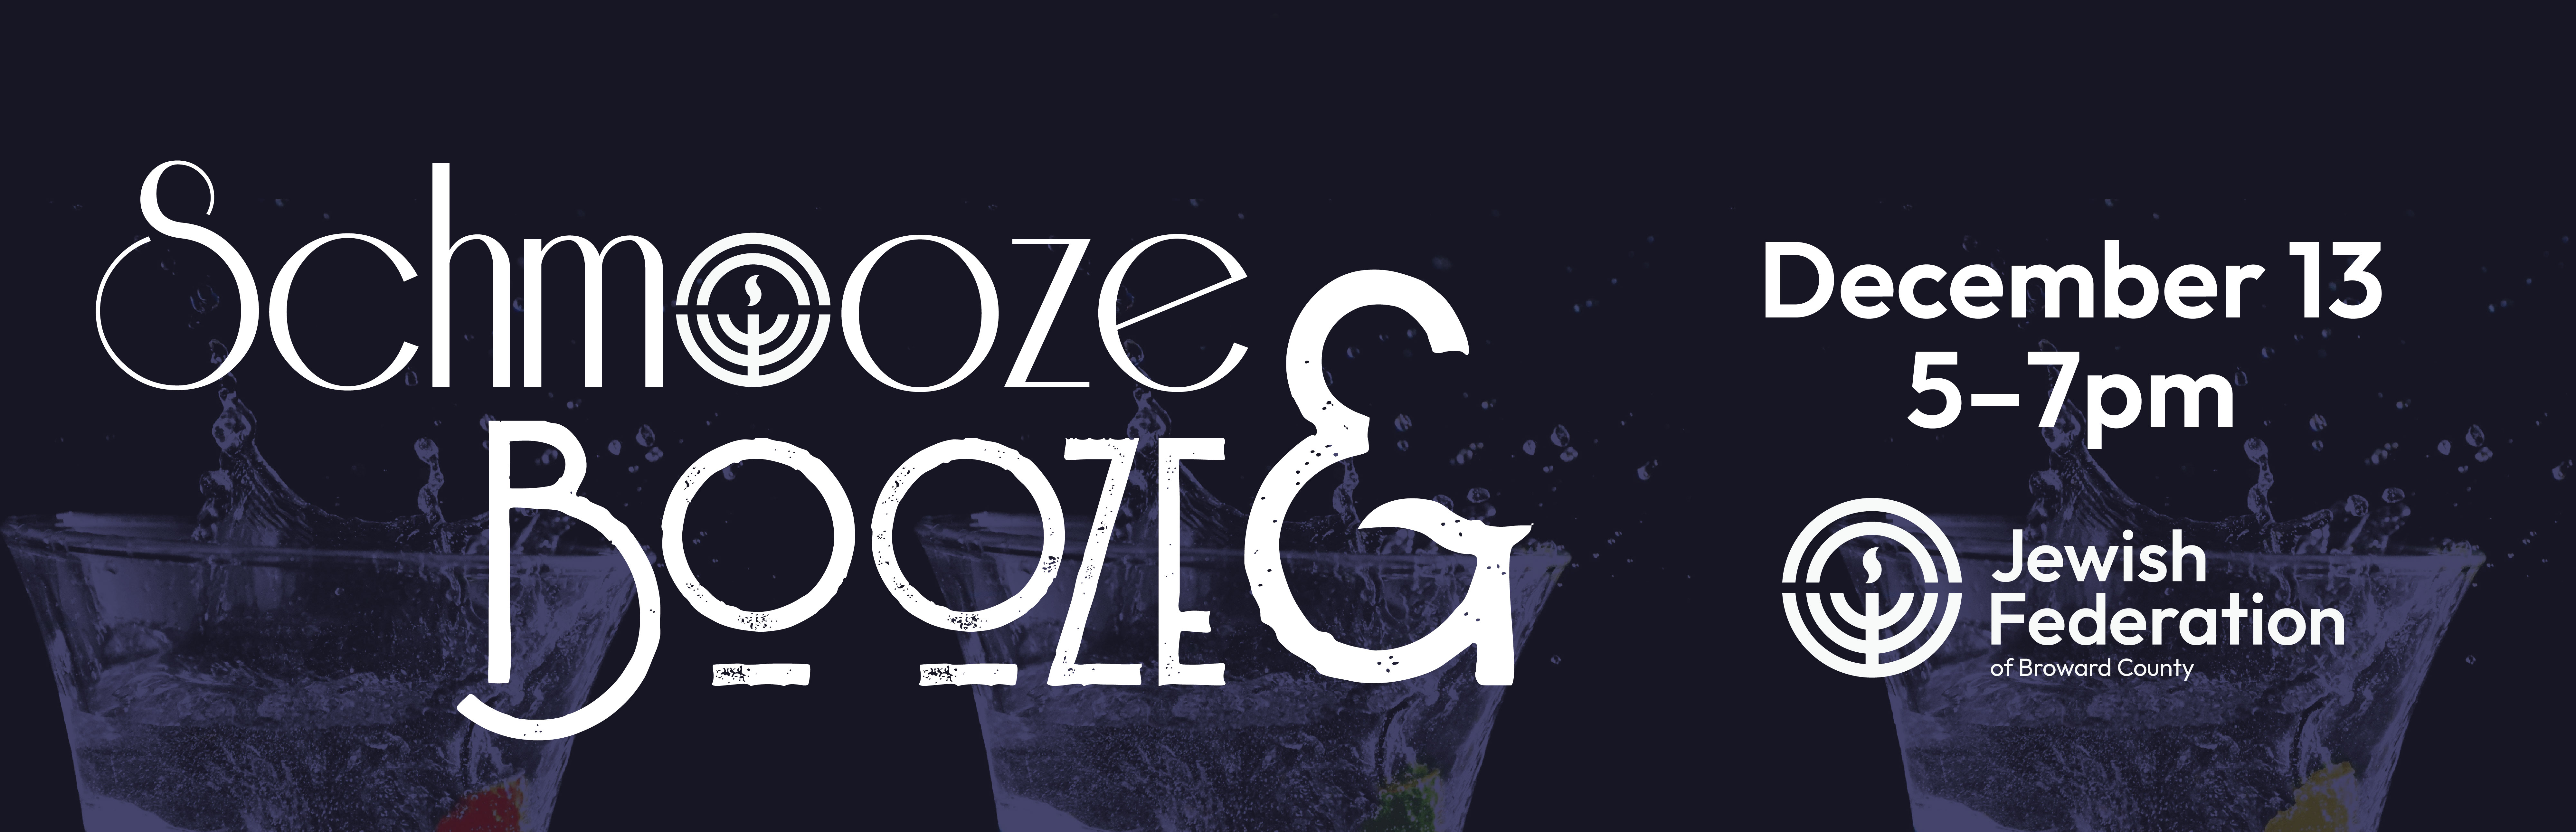 Schmooze & Booze Banner 01